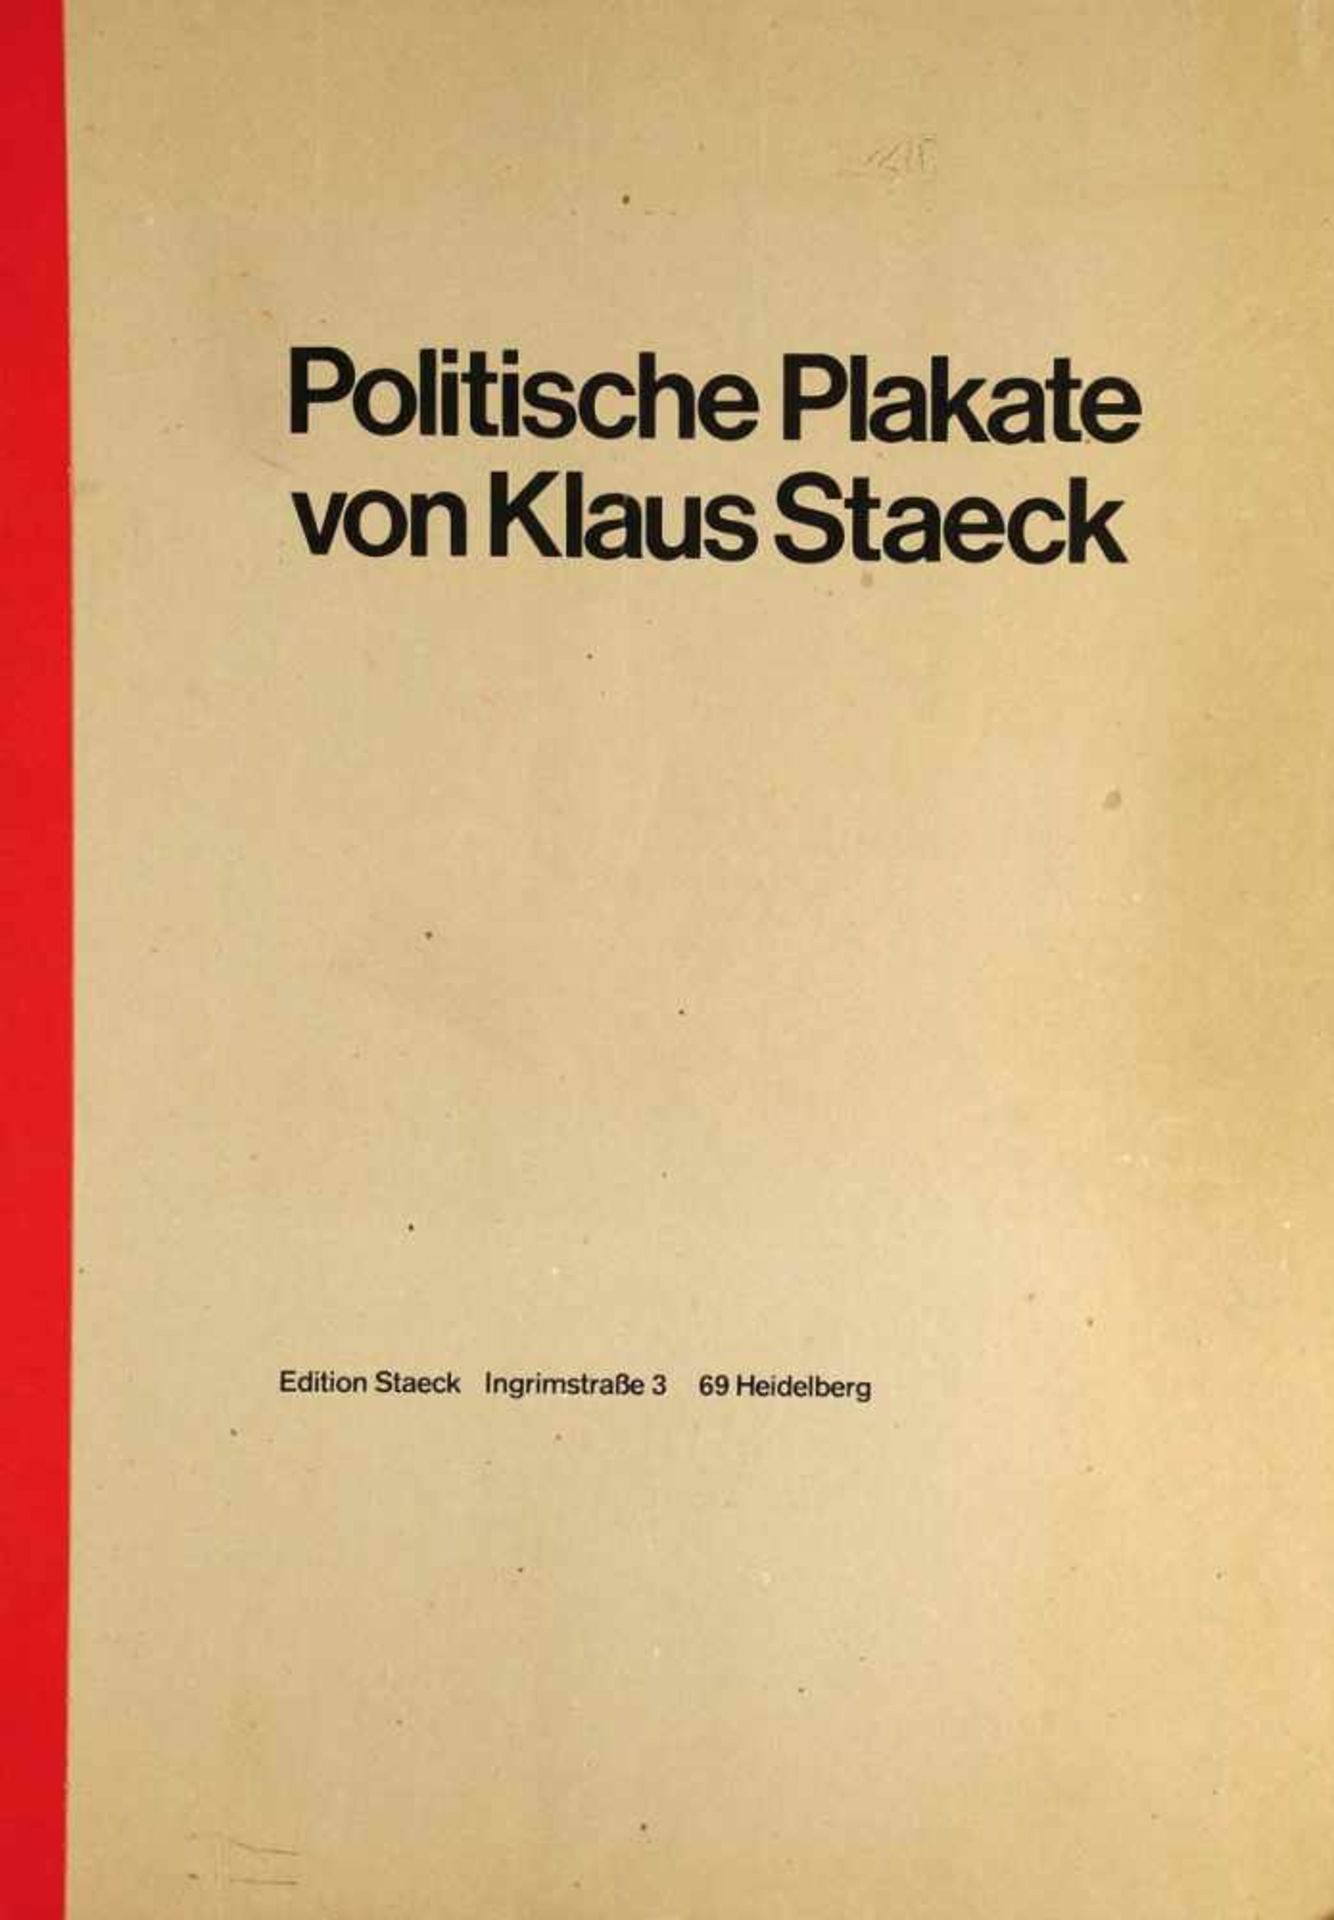 Klaus Staeck 1938 Pulsnitz bei Dresden - lebt und arbeitet in Heidelberg - "Politische Plakate" - - Bild 8 aus 8